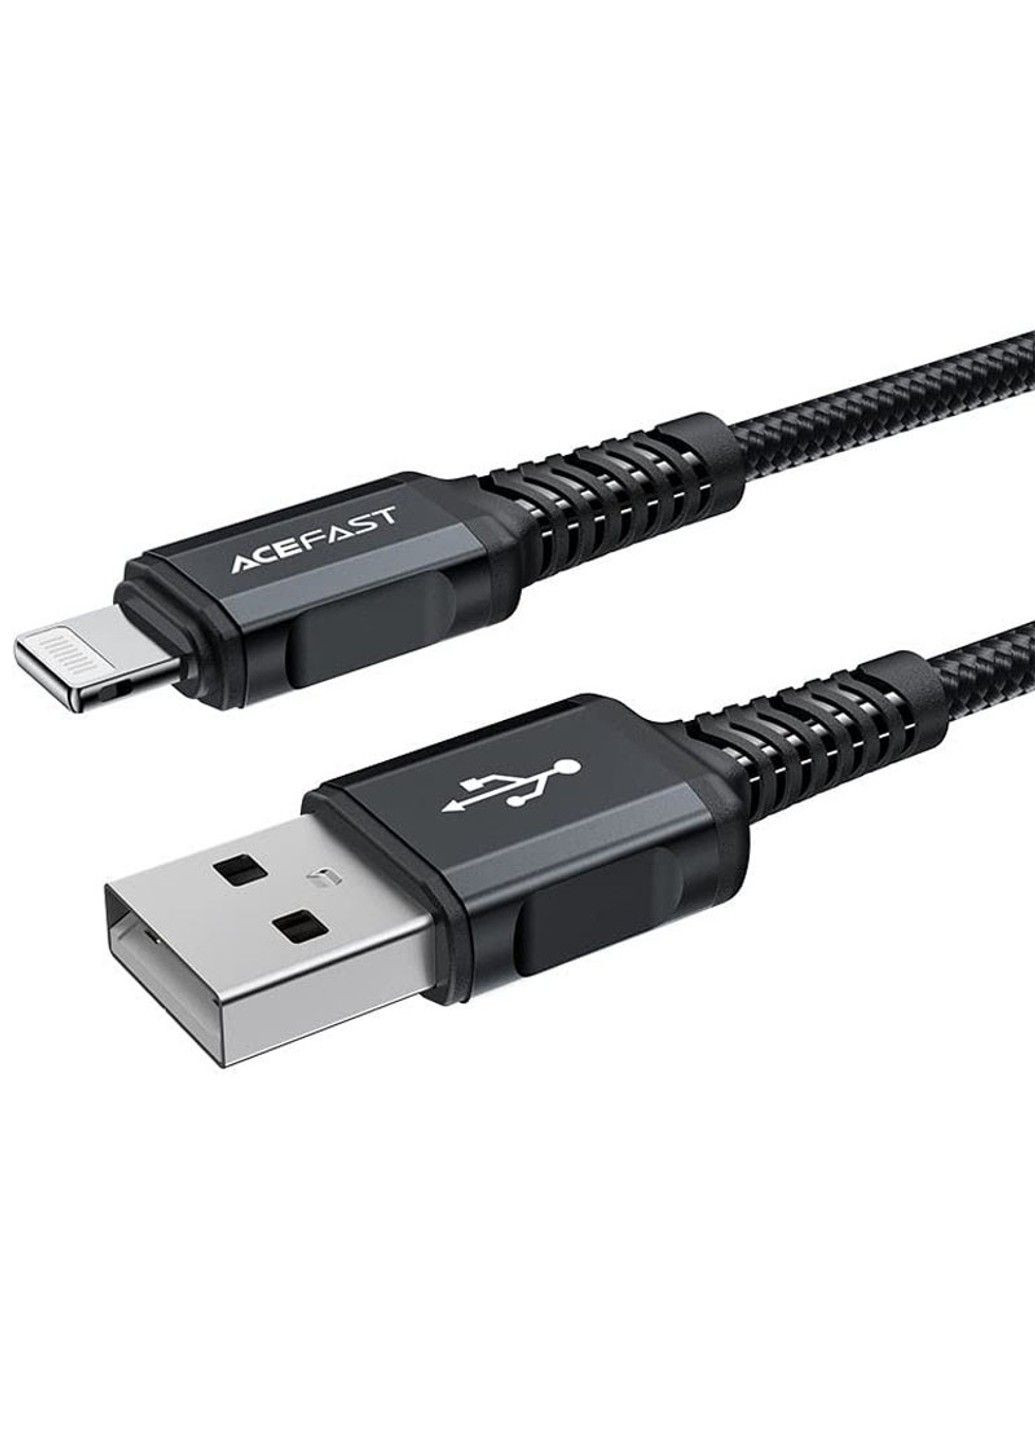 Дата кабель MFI C4-02 USB-A to Lightning aluminum alloy (1.8m) Acefast (291881788)